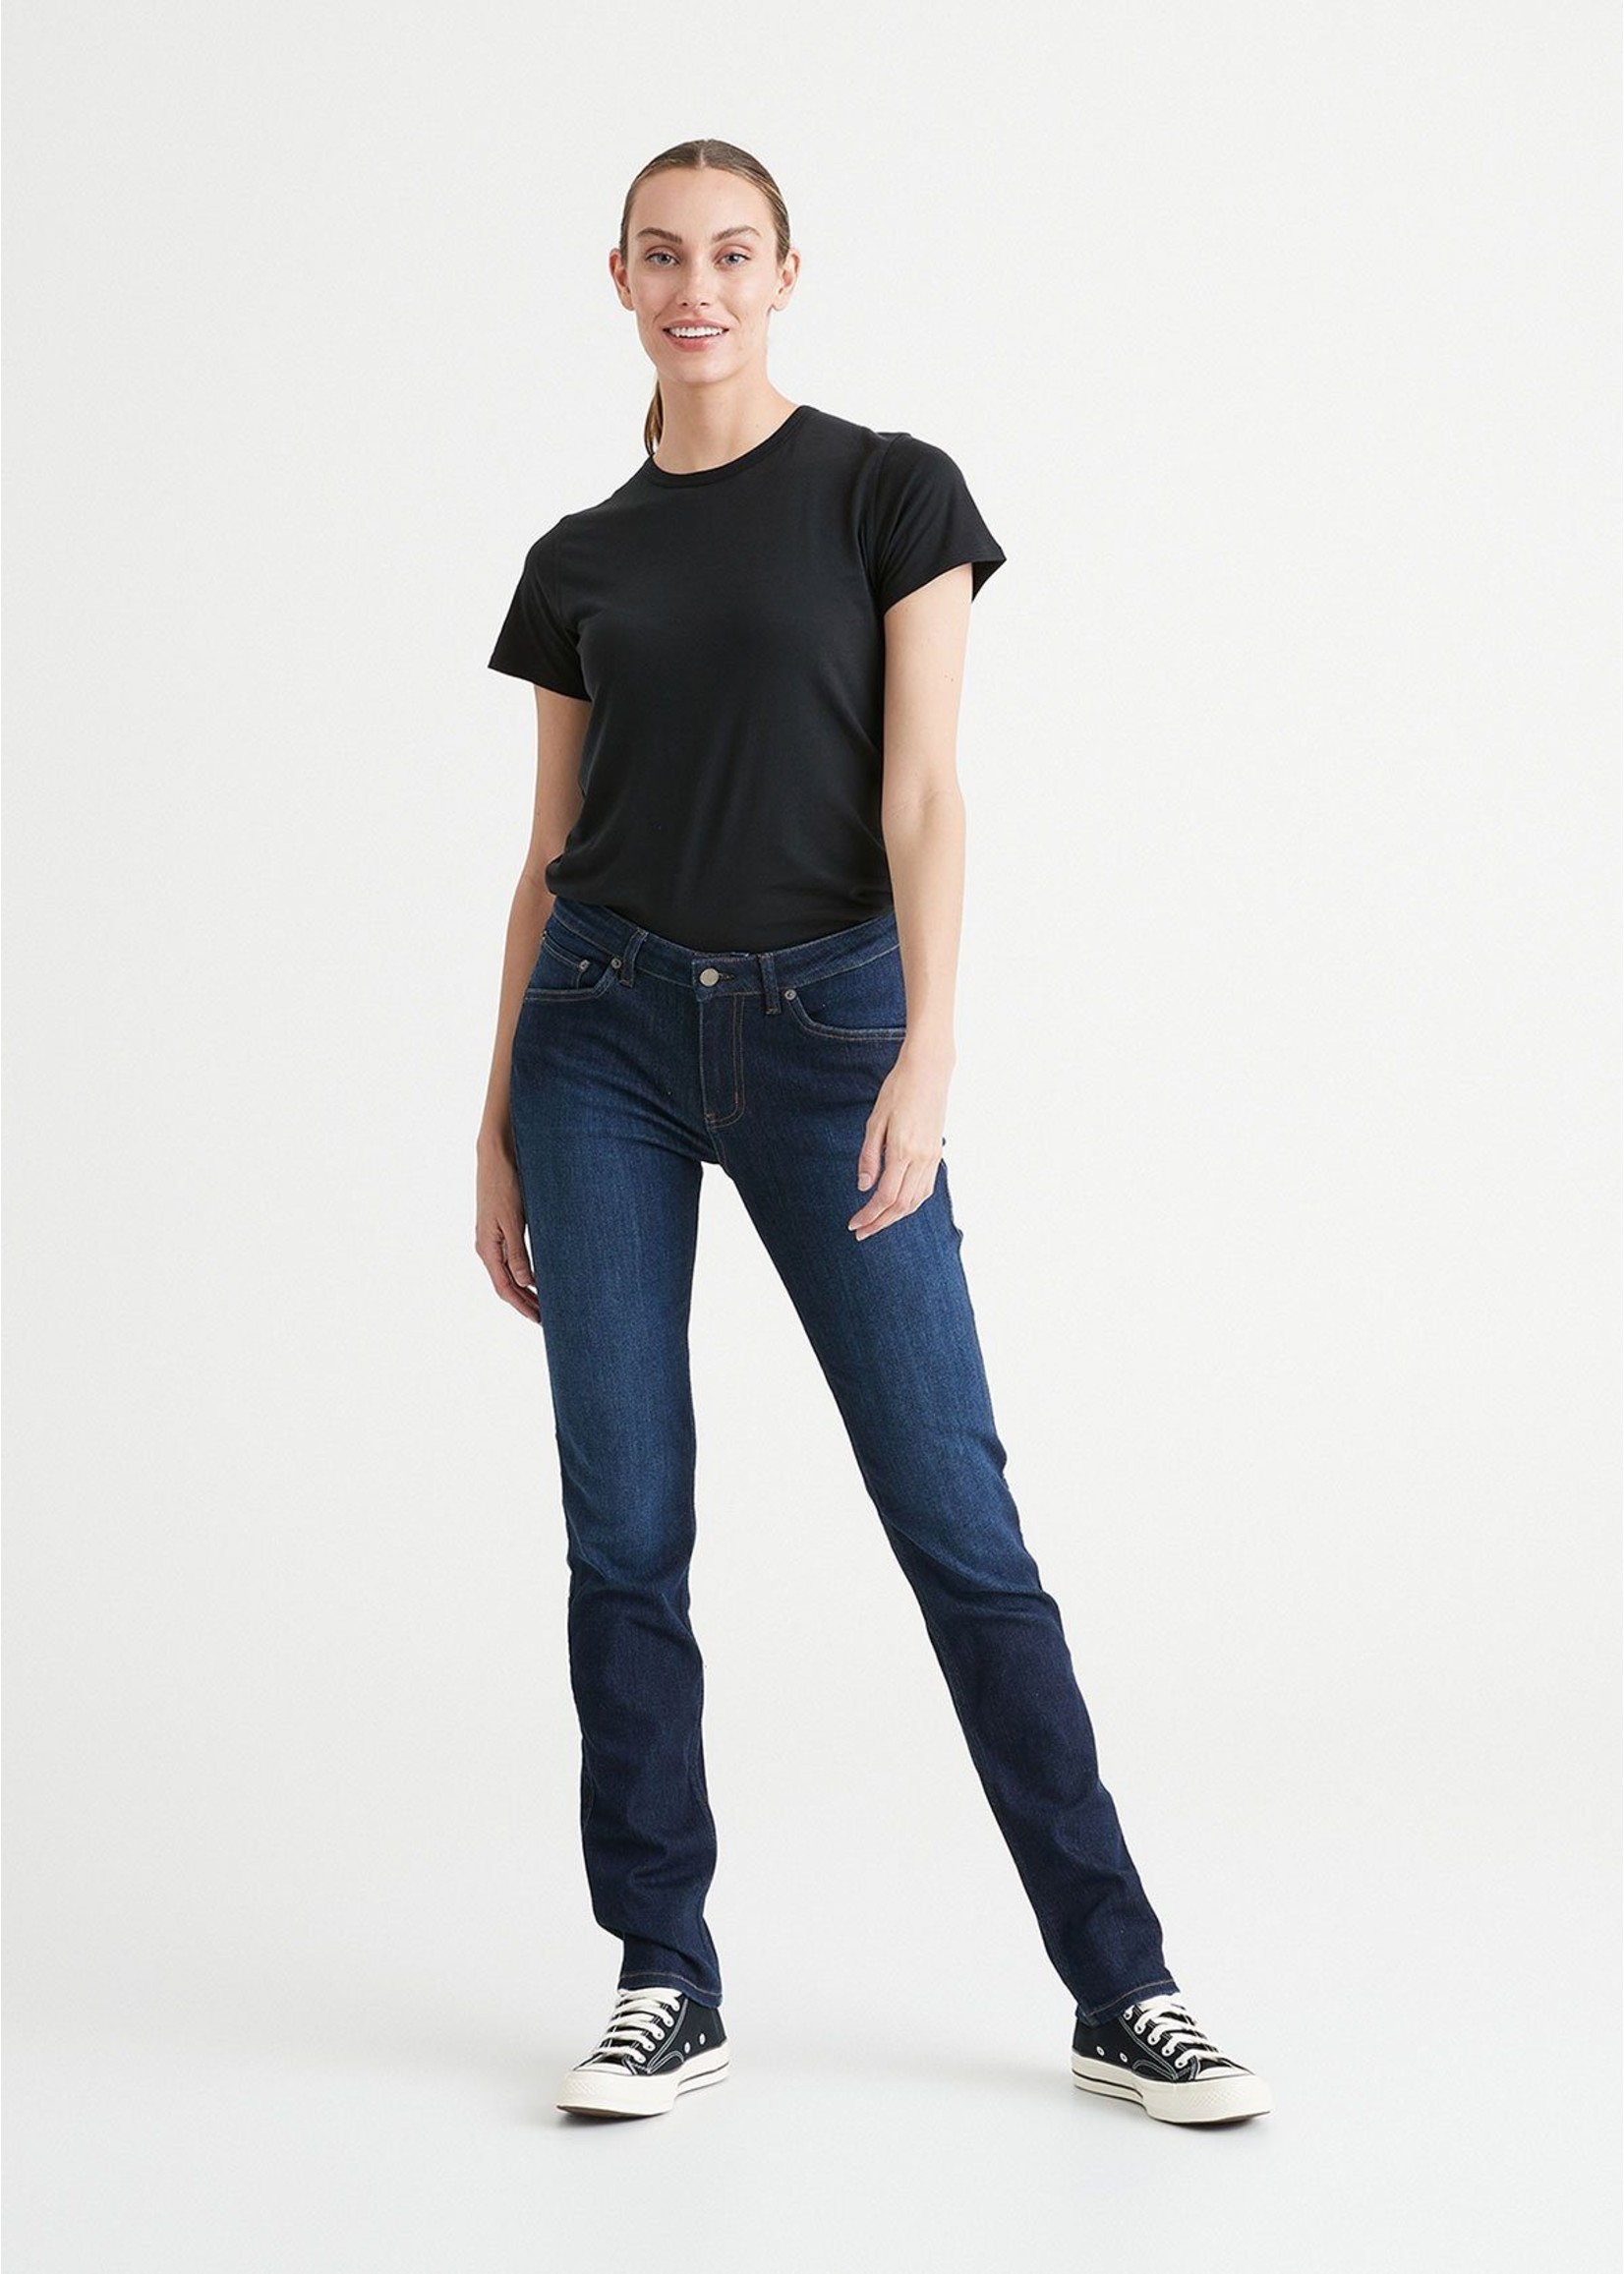 DUER Jeans Performance coupe ajustée jambe droite-Femme